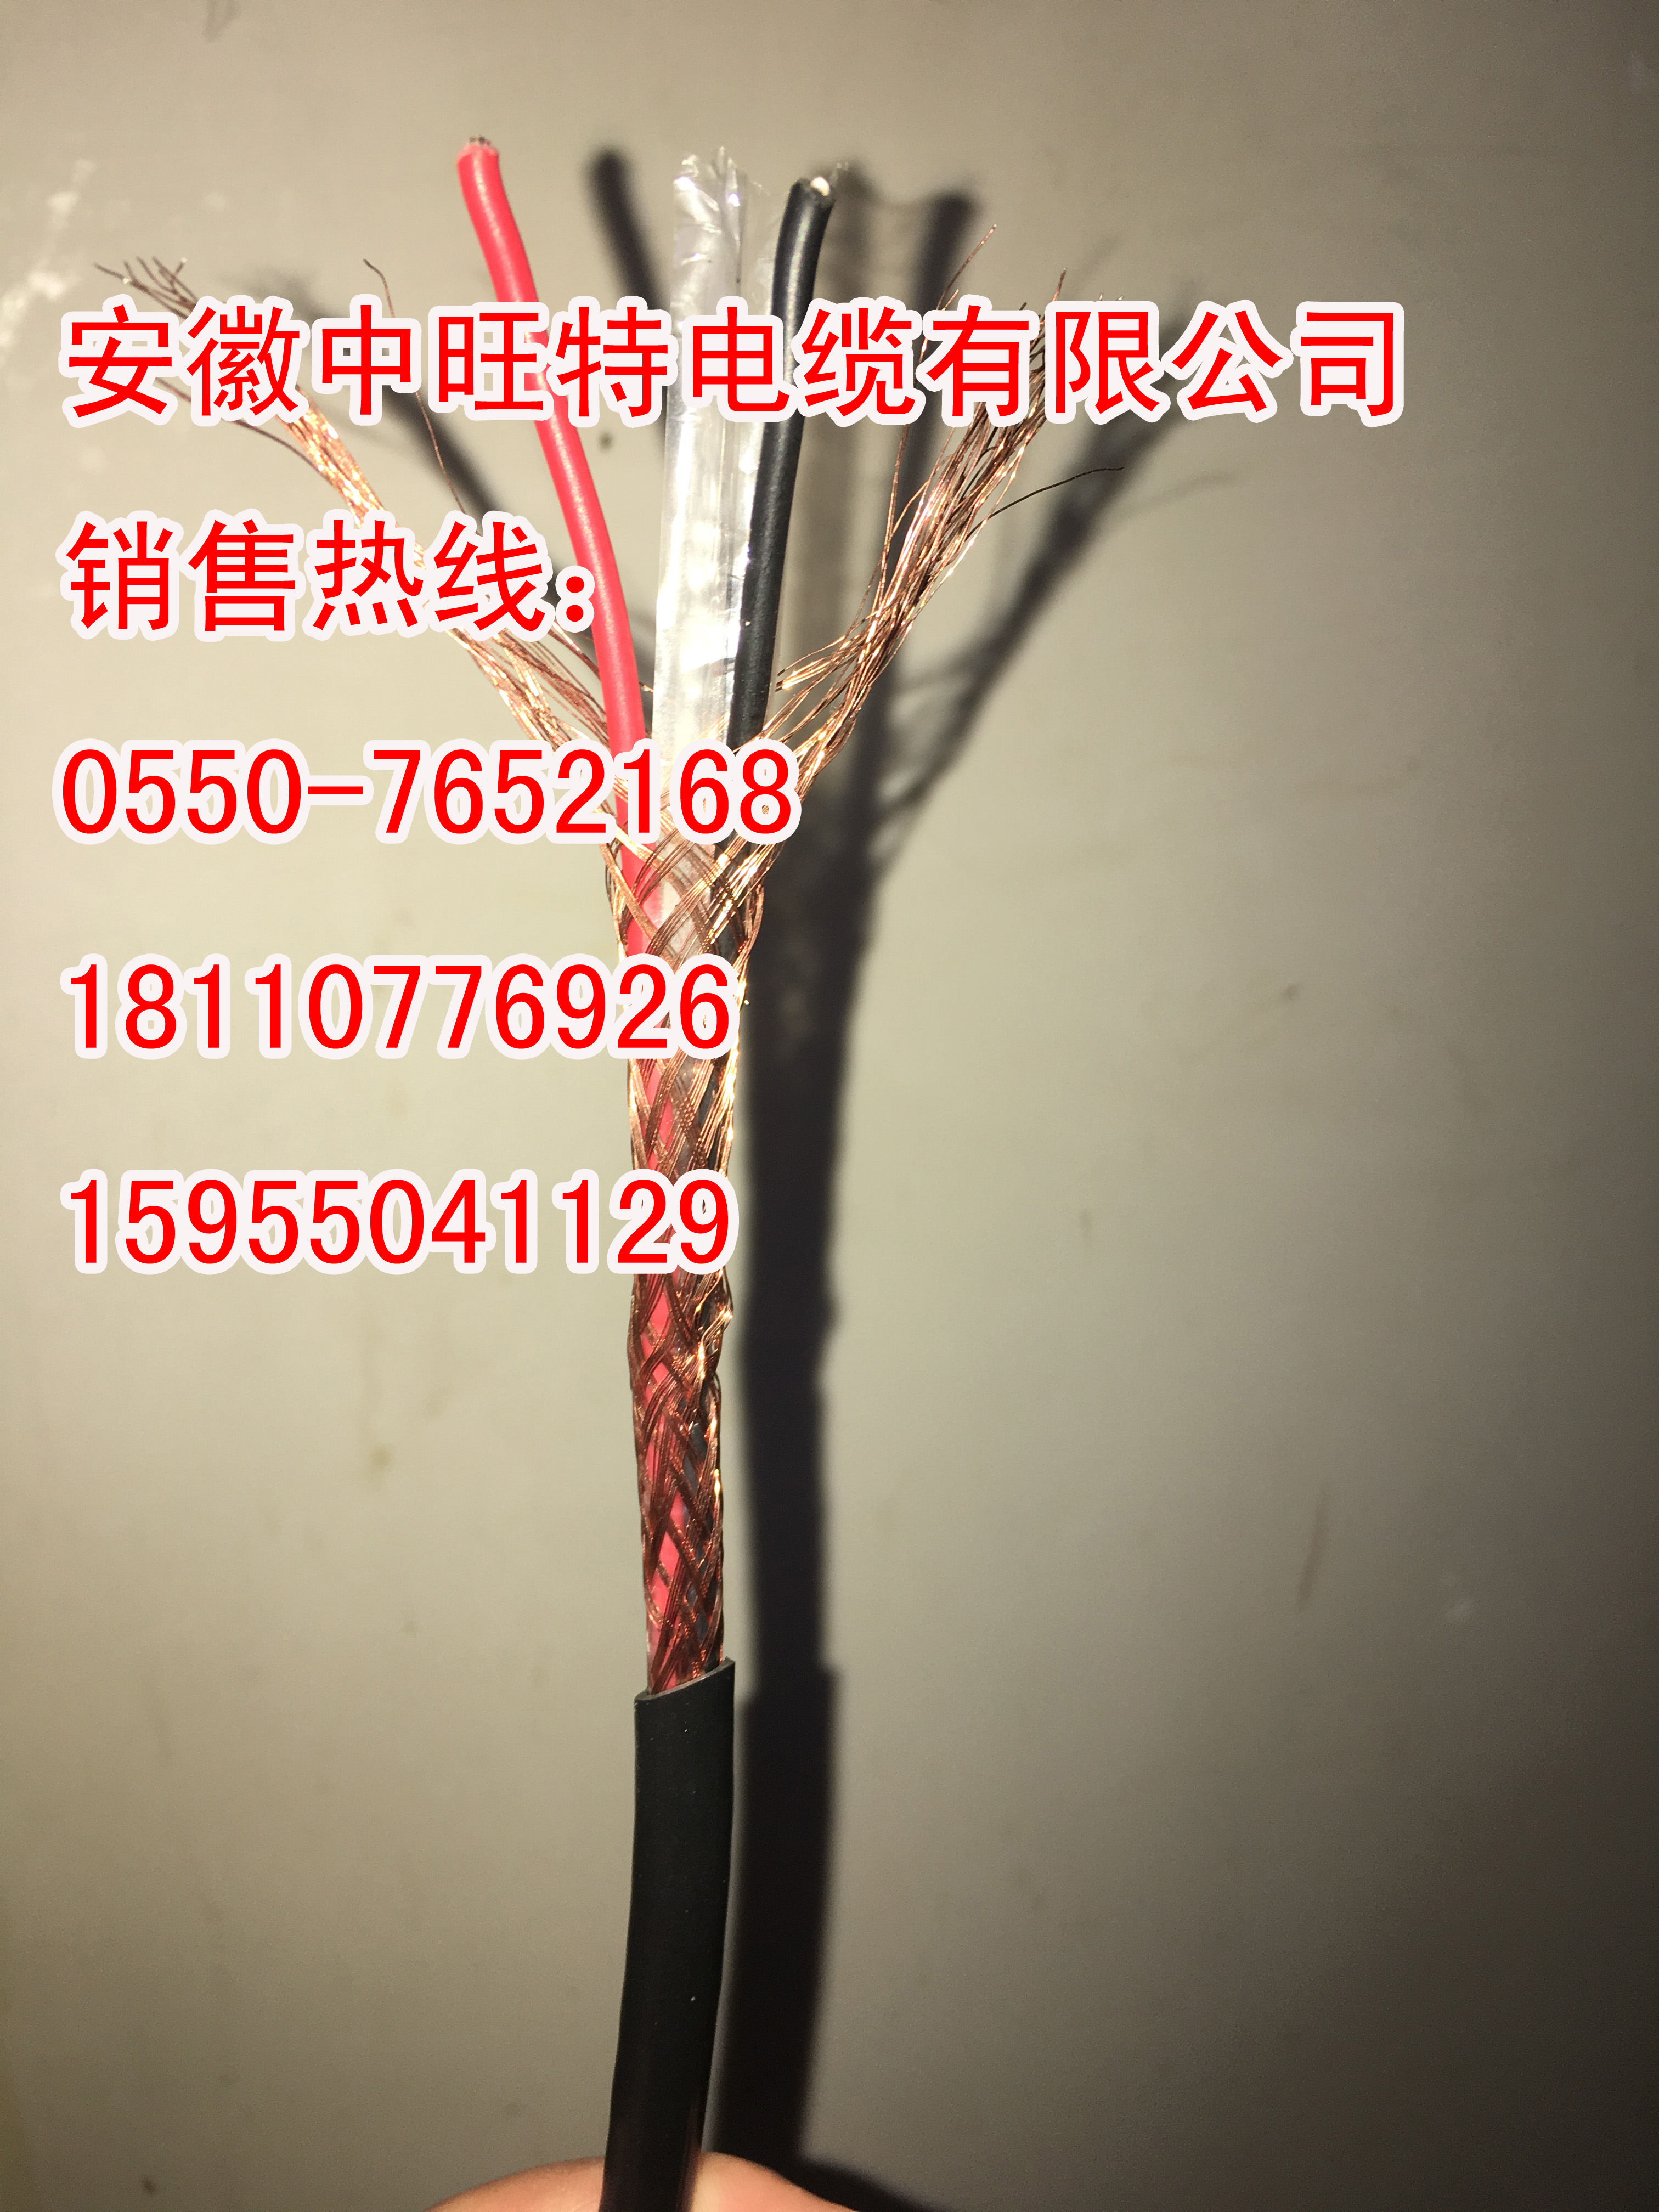 滁州市热电偶用高温补偿电缆厂家ia-EX-HS-FP1V105ia-EX-HS-FP1V105热电偶用高温补偿电缆